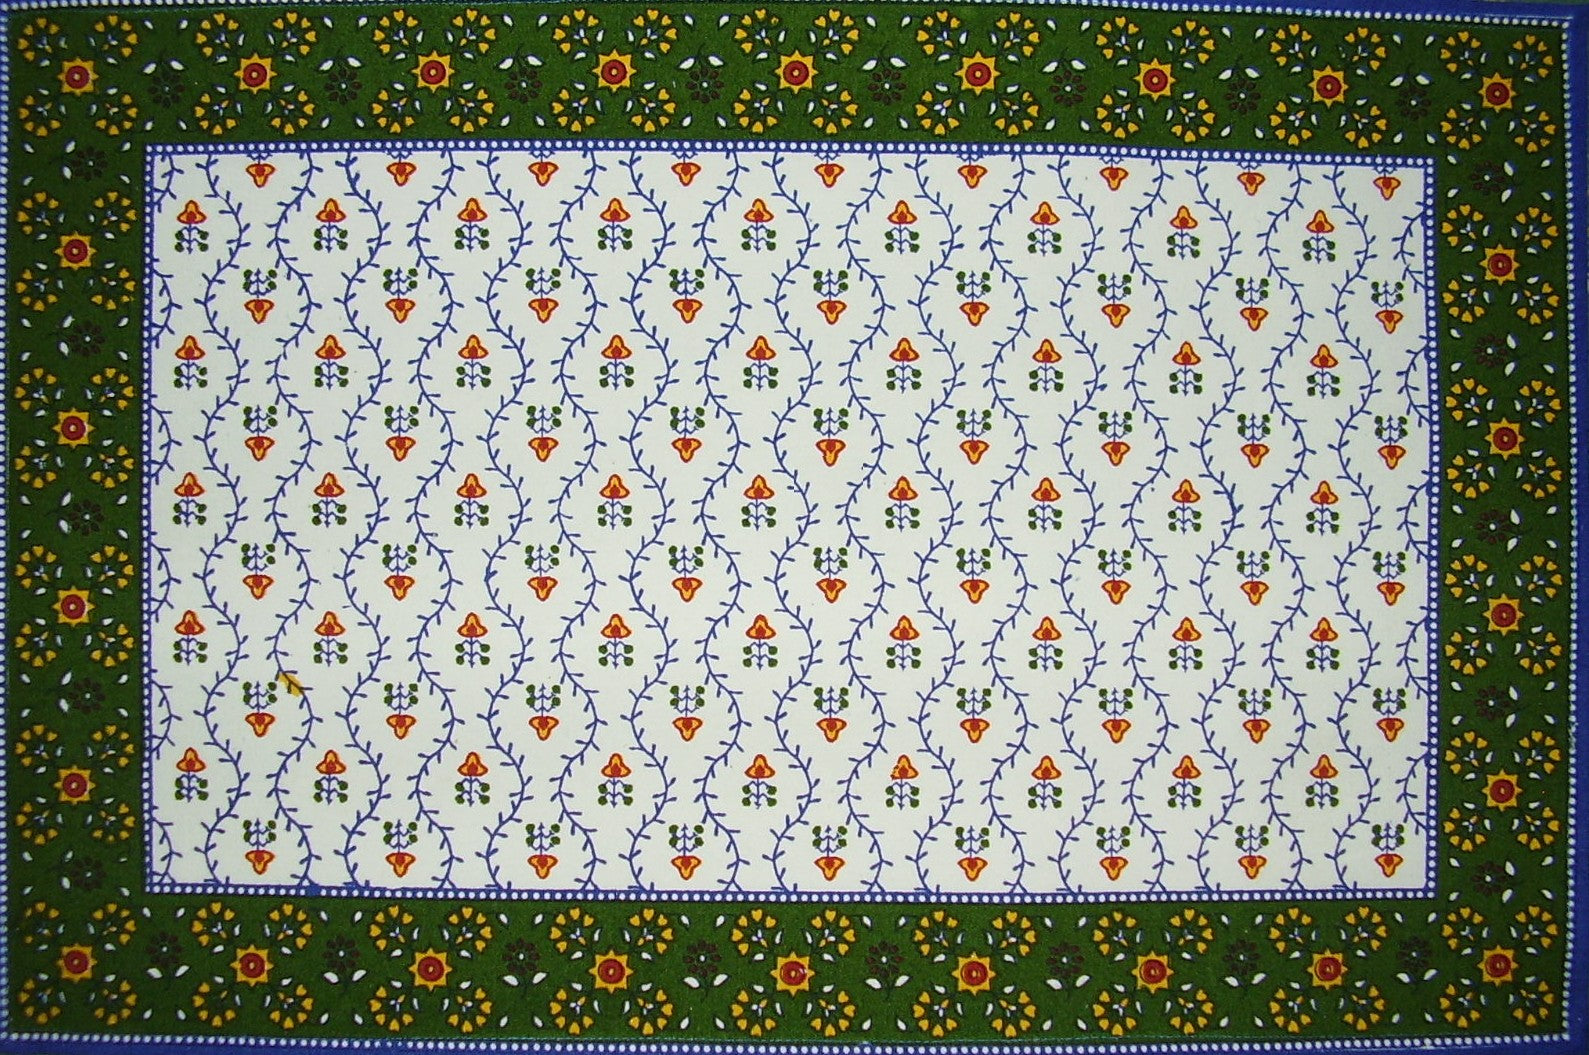 Tischset aus Baumwolle mit Buti-Print, 48,3 x 33 cm, Blau 